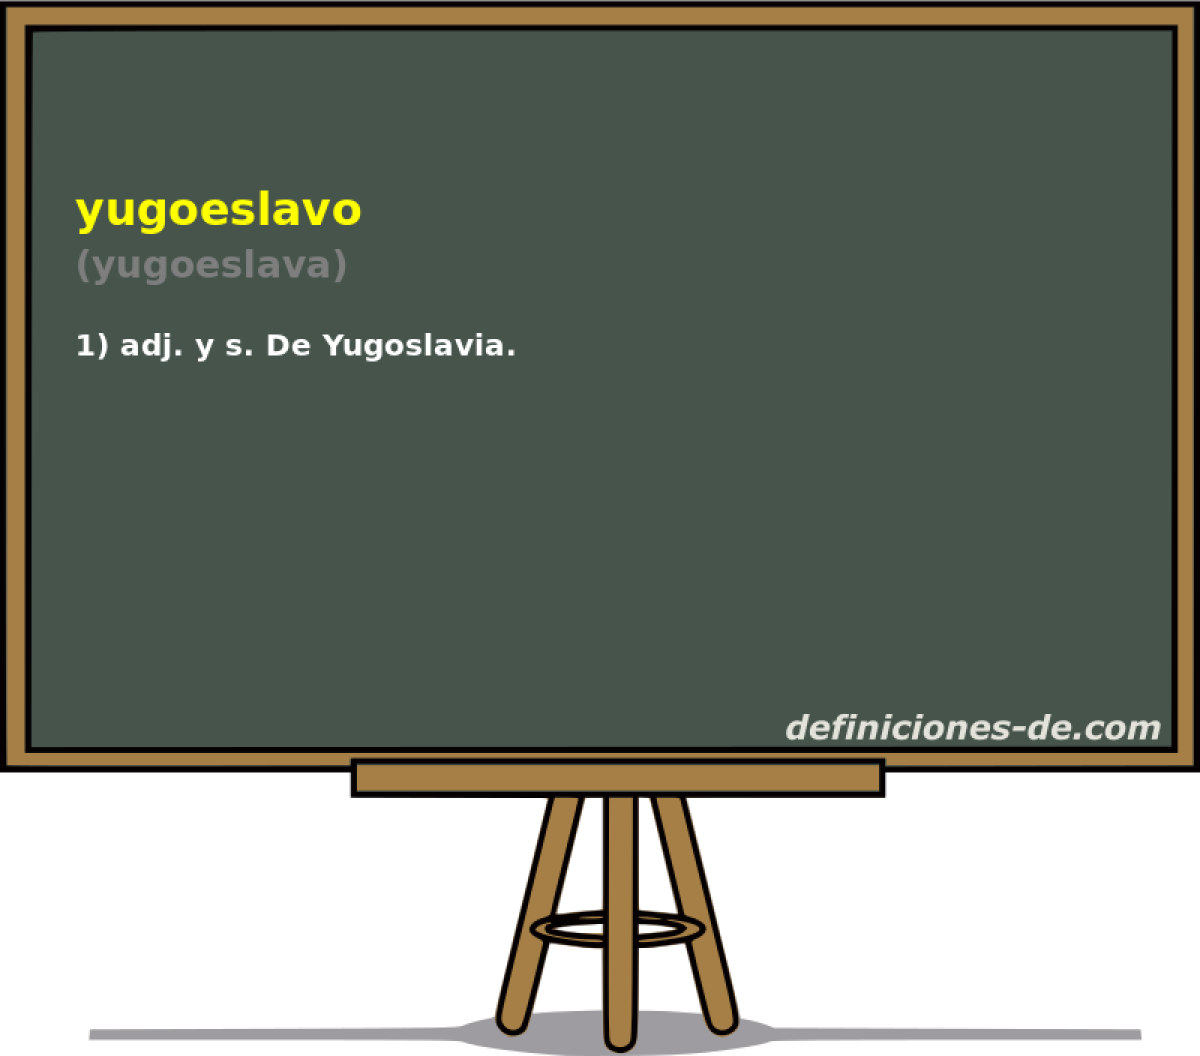 yugoeslavo (yugoeslava)